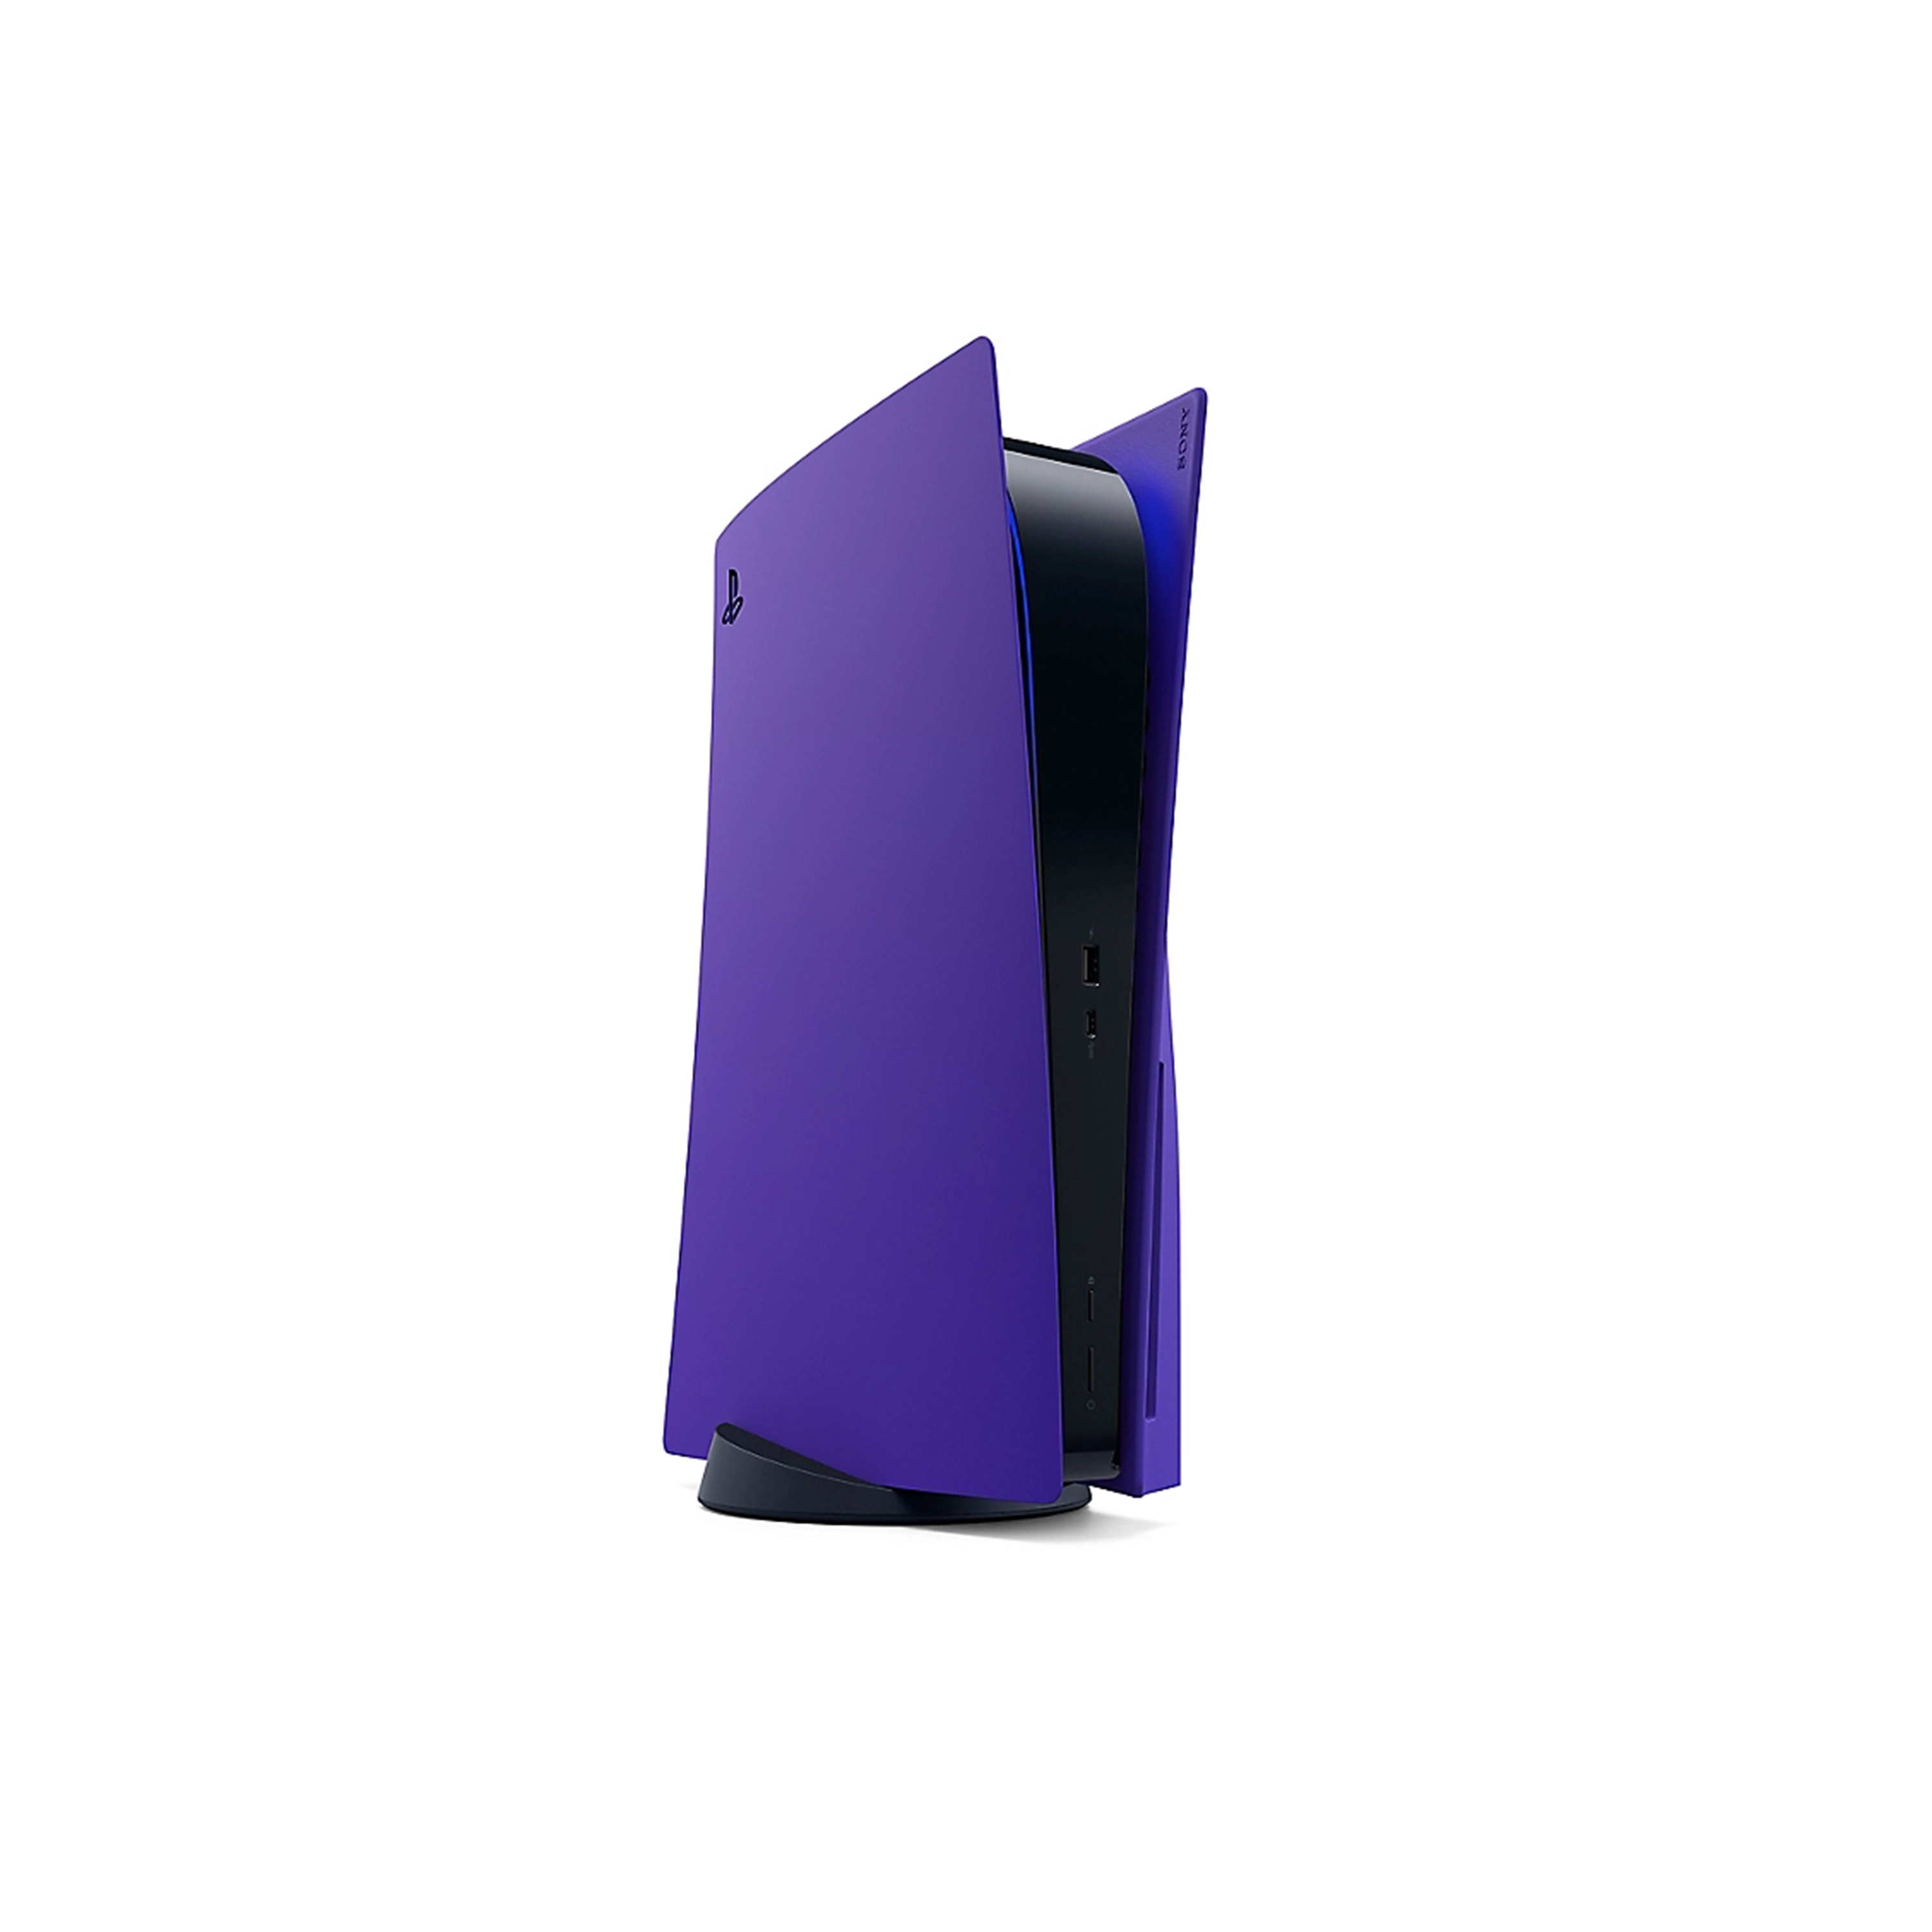 銀河紫PlayStationR5 光碟版主機護蓋